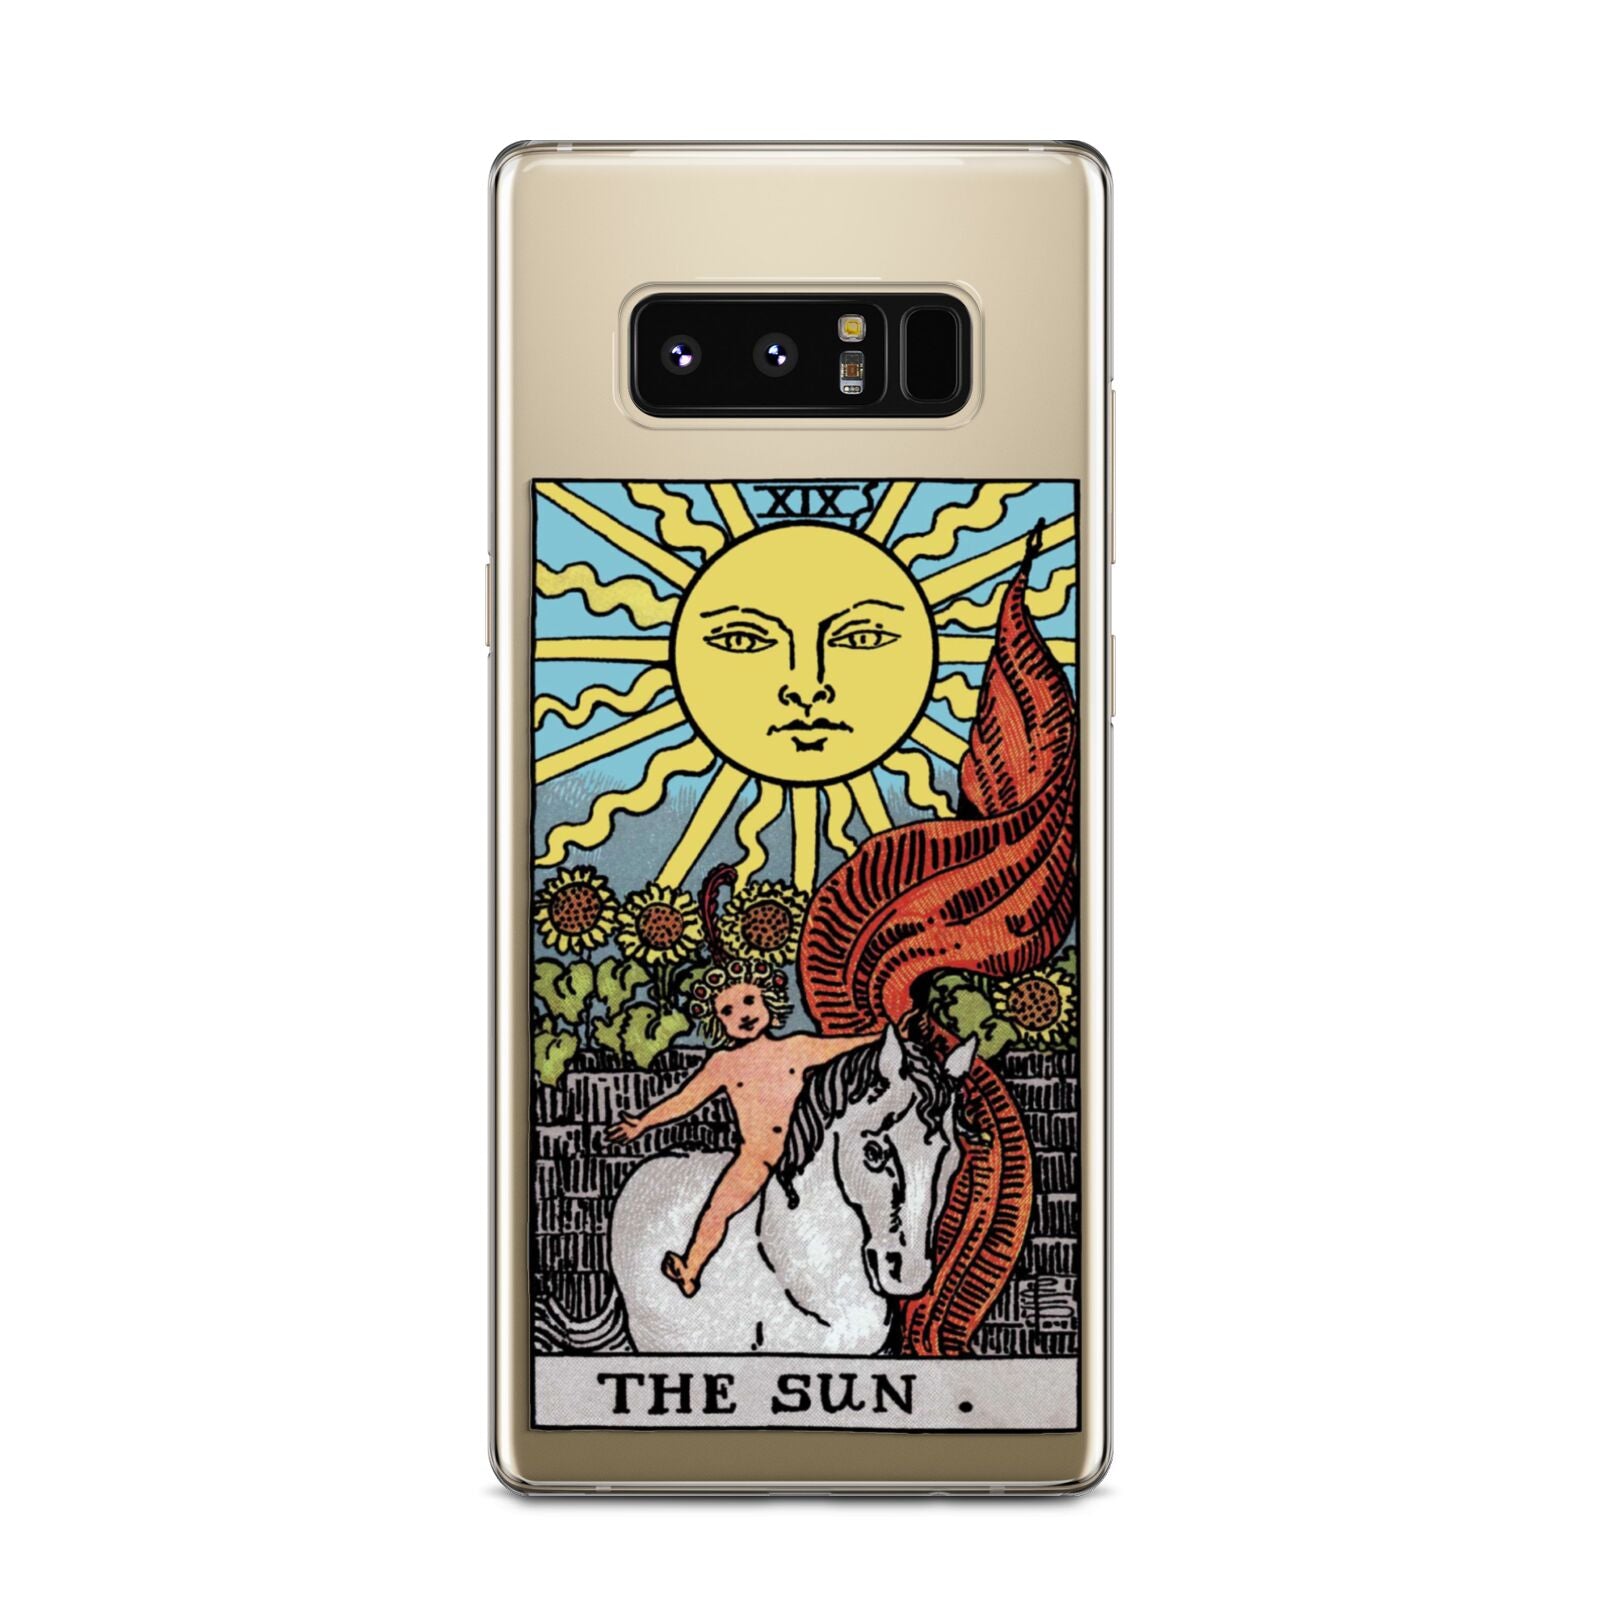 The Sun Tarot Card Samsung Galaxy Note 8 Case